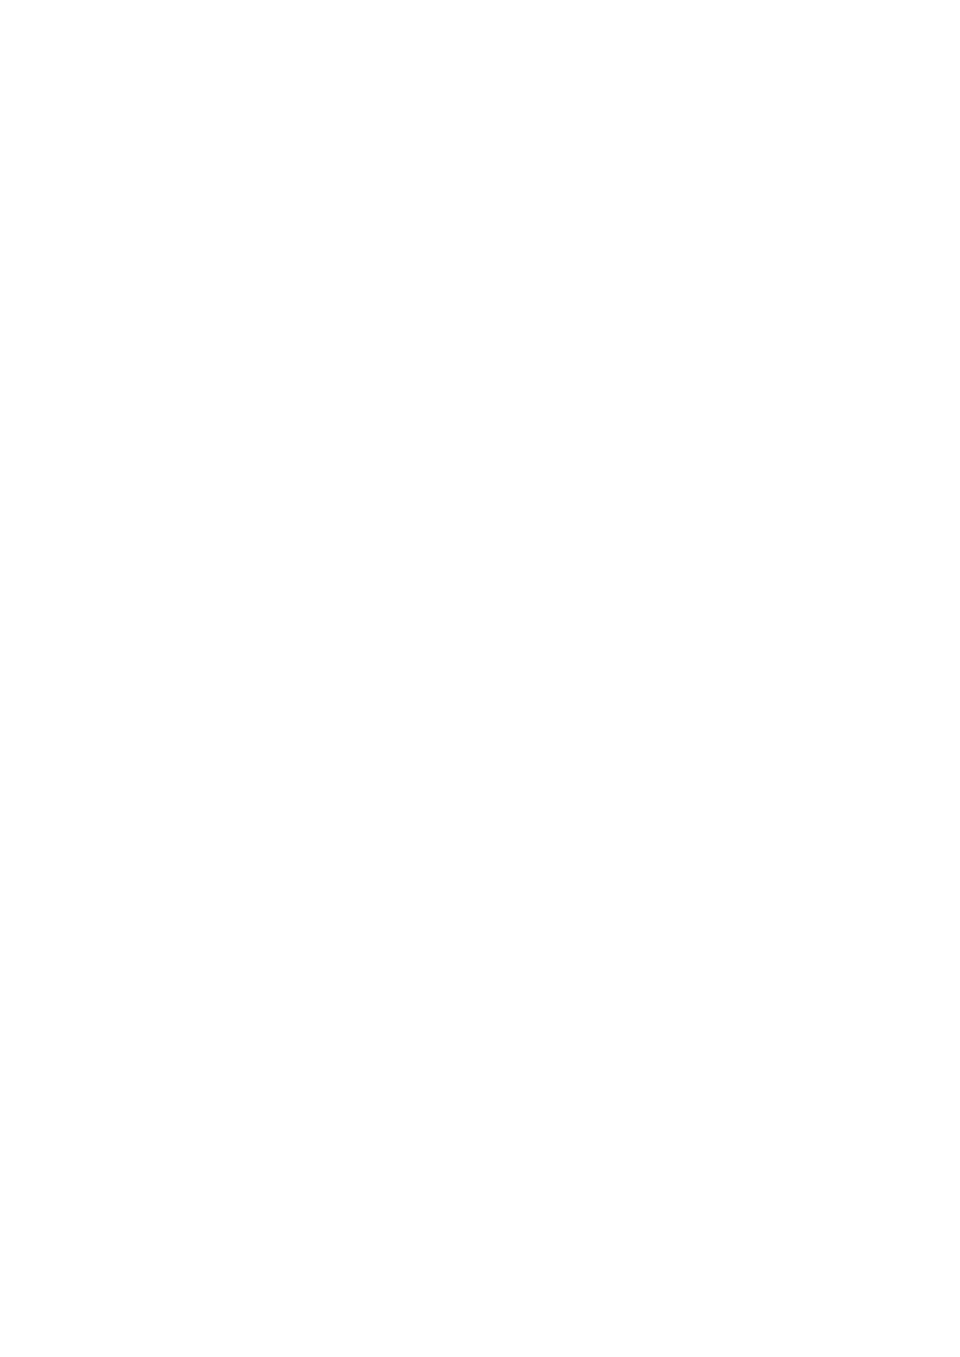 - 347 s. : kuv. ; 21 cm 84 BRACKEN, Alexandra Prinsessa, lurjus ja maalaispoika : tarina elokuvasta Star Wars: uusi toivo / Alexandra Bracken ; suomentanut Antti Hulkkonen. [Helsinki] : Sanoma, 2015.